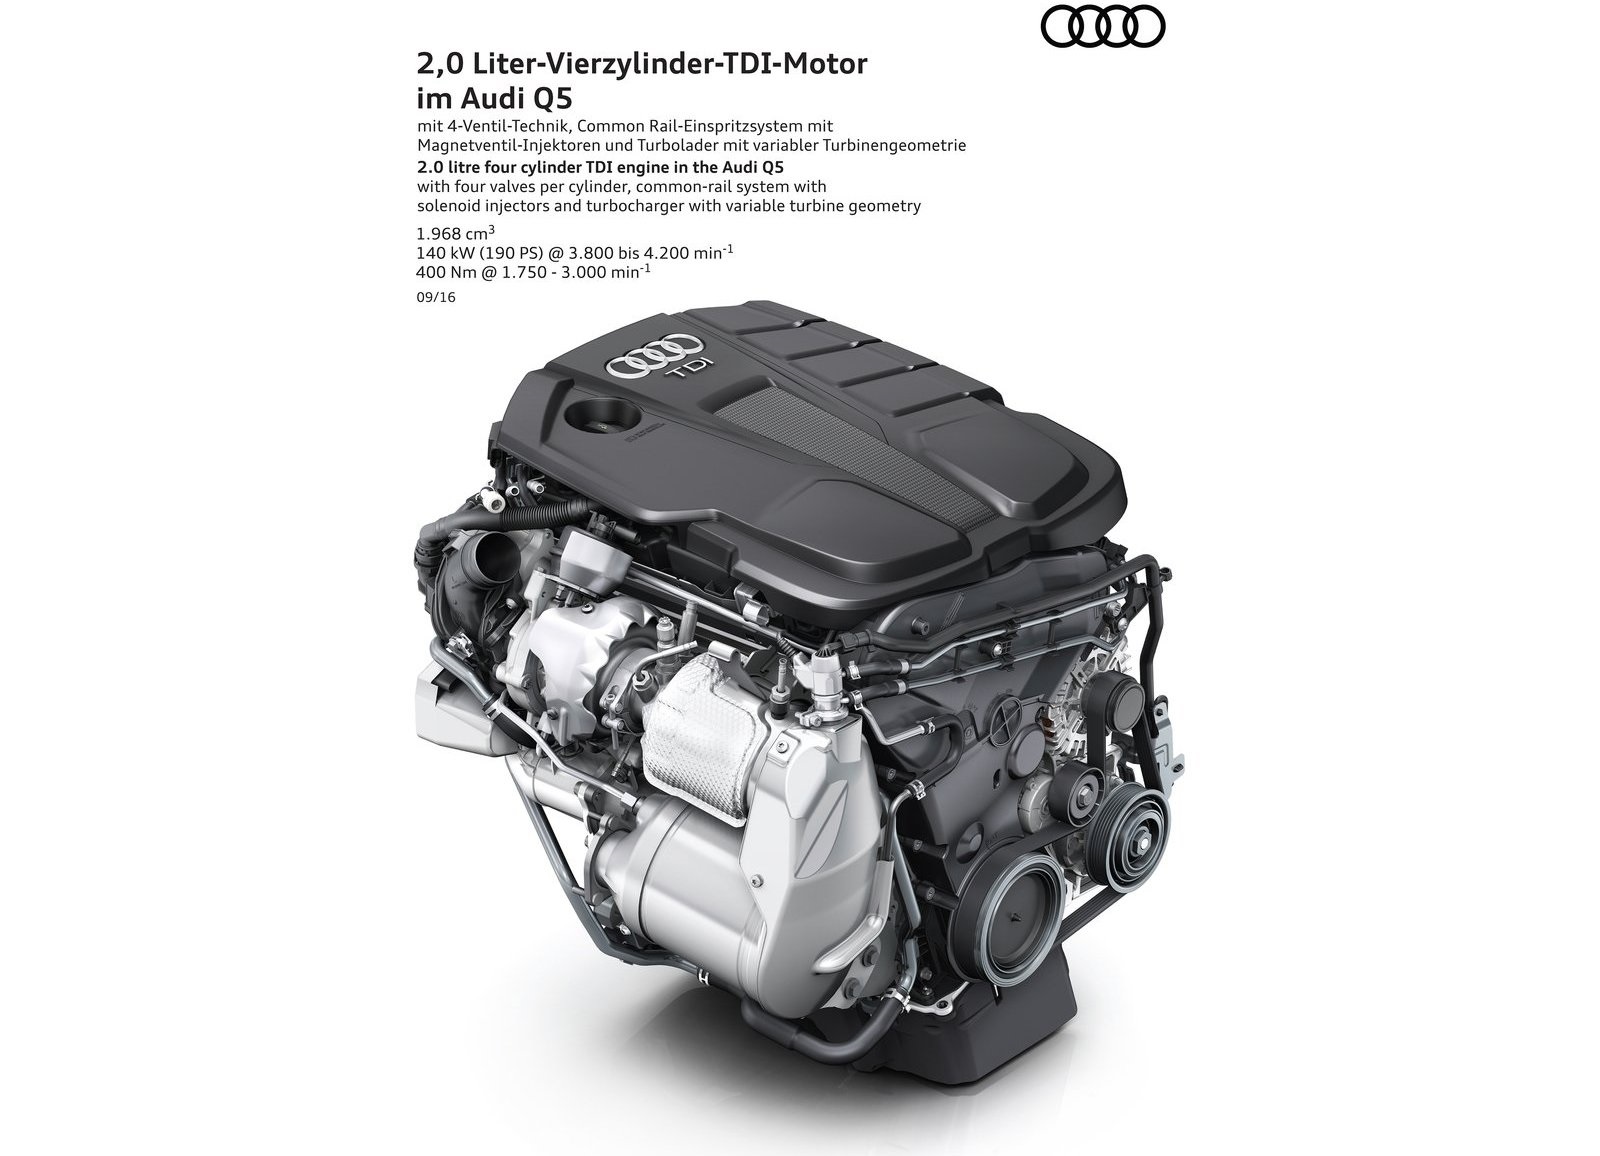 Ще одна технічна особливість нового Audi Q5 - турбодизель класу Євро 6+, той самий «тестовий» мотор